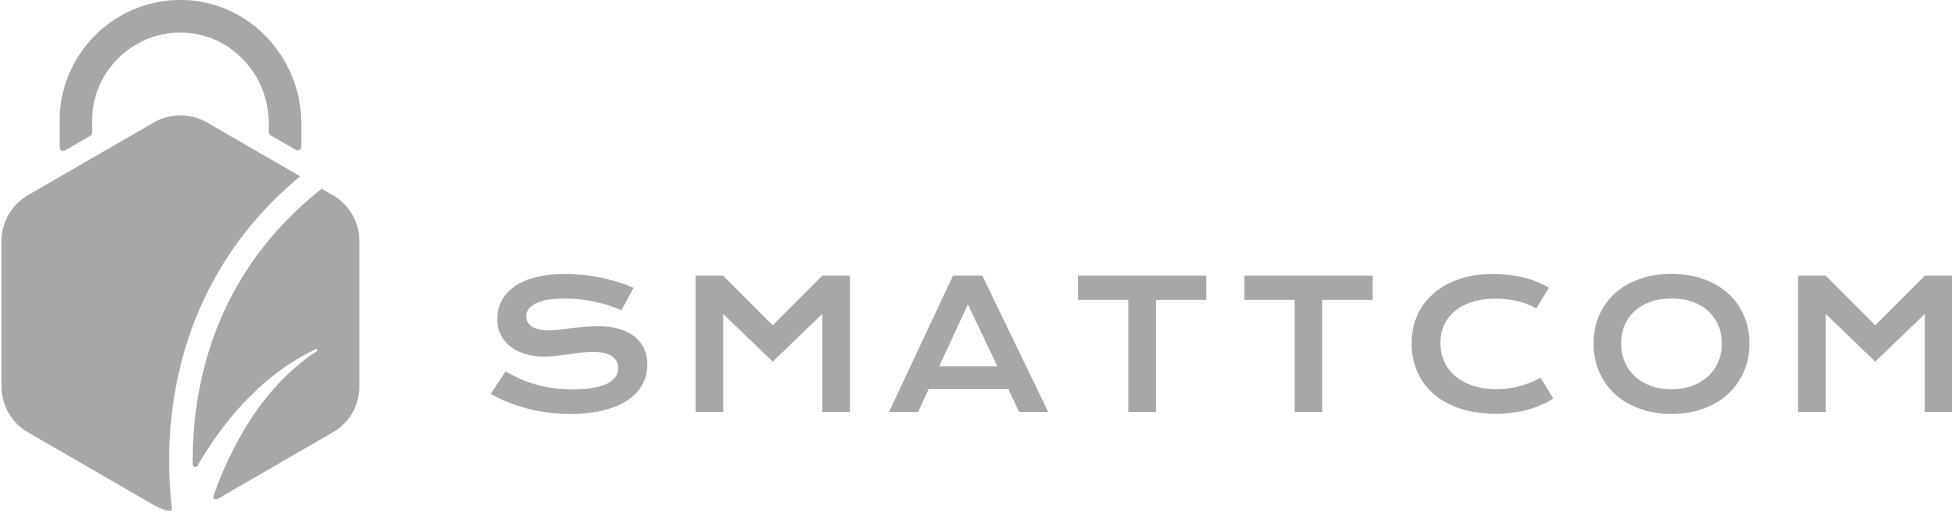 Logo Smattcom Gris